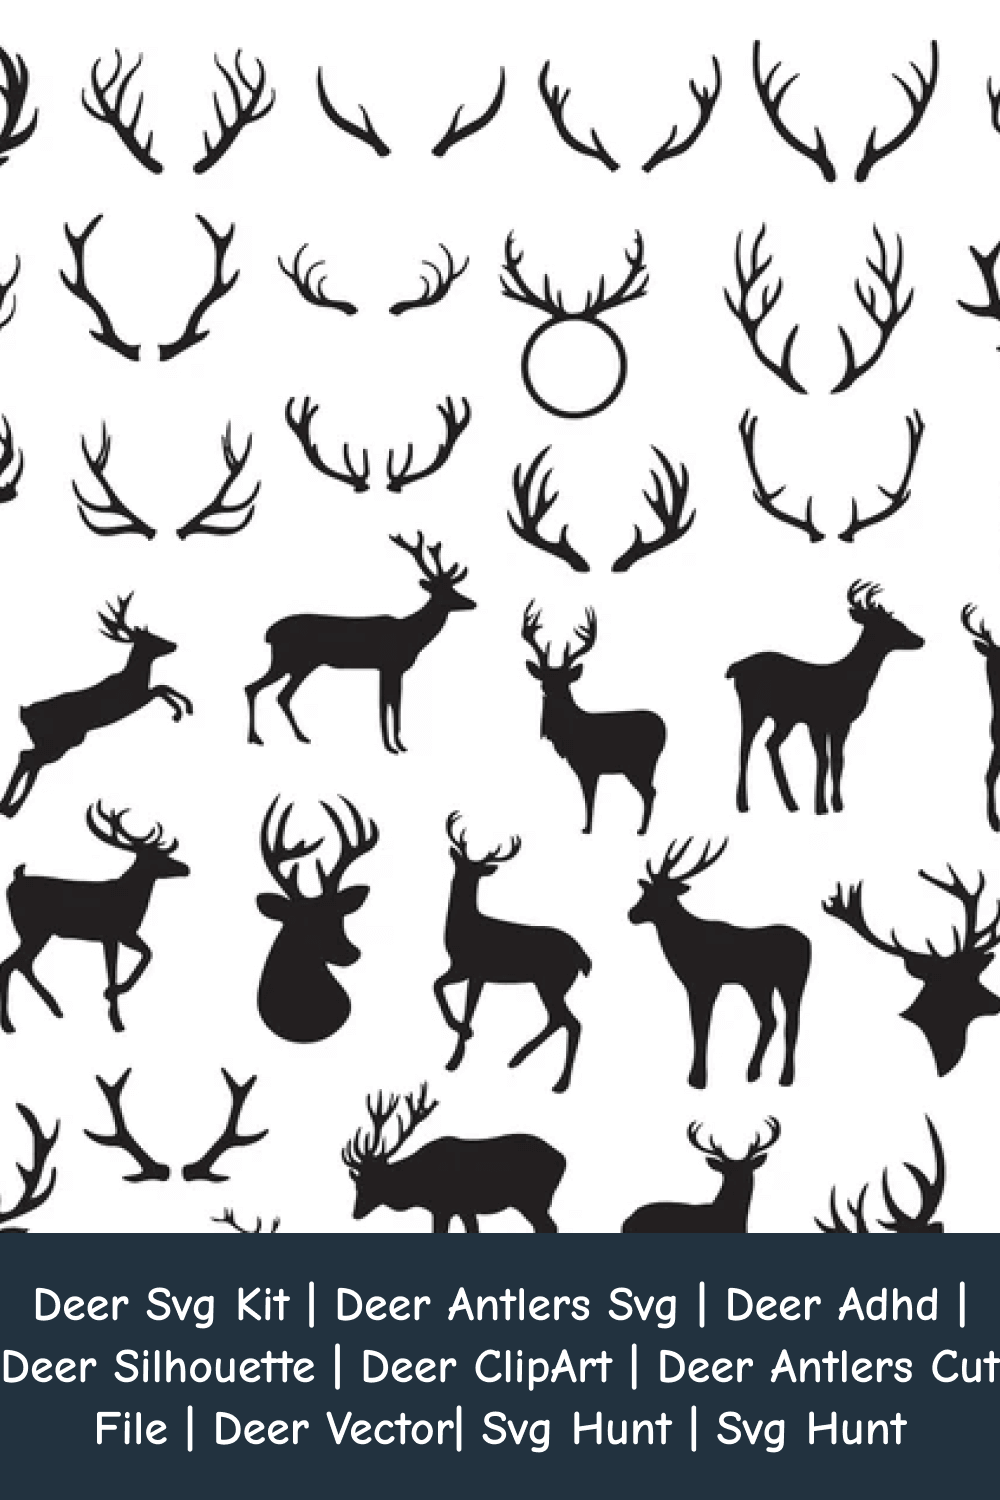 Deer Antlers SVG.